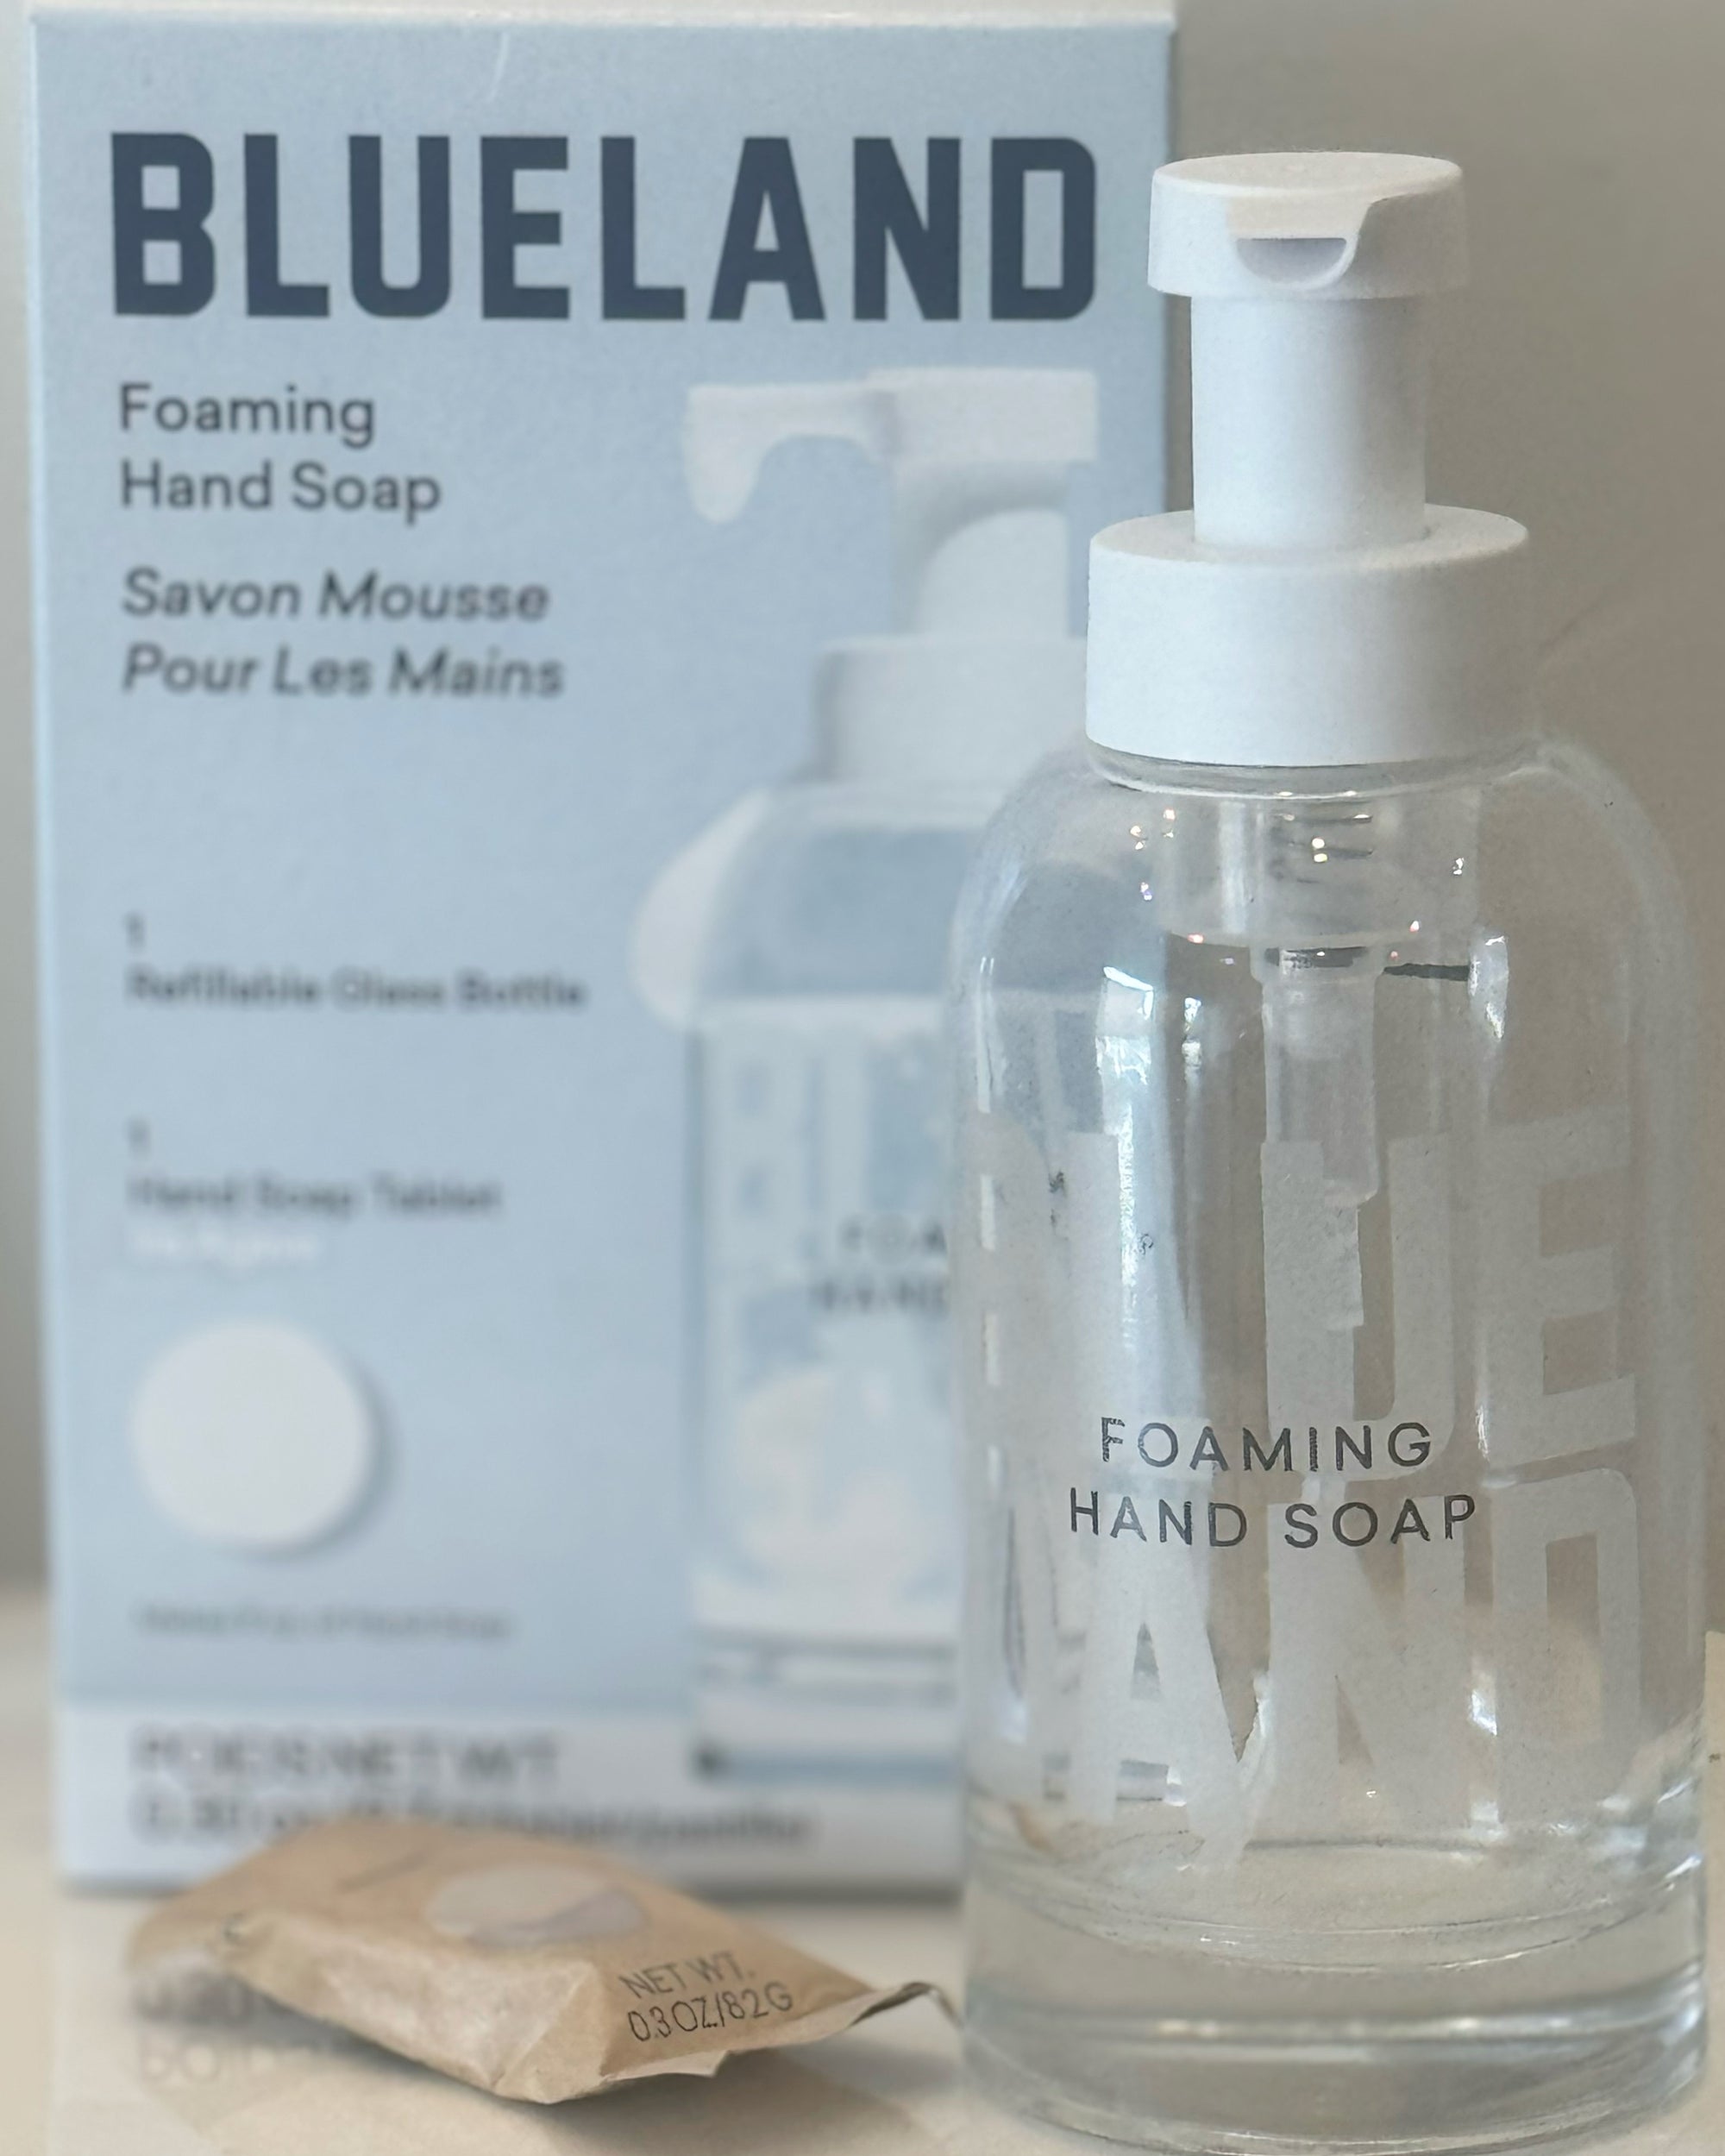 Blueland Foaming Hand Soap Starter Kit